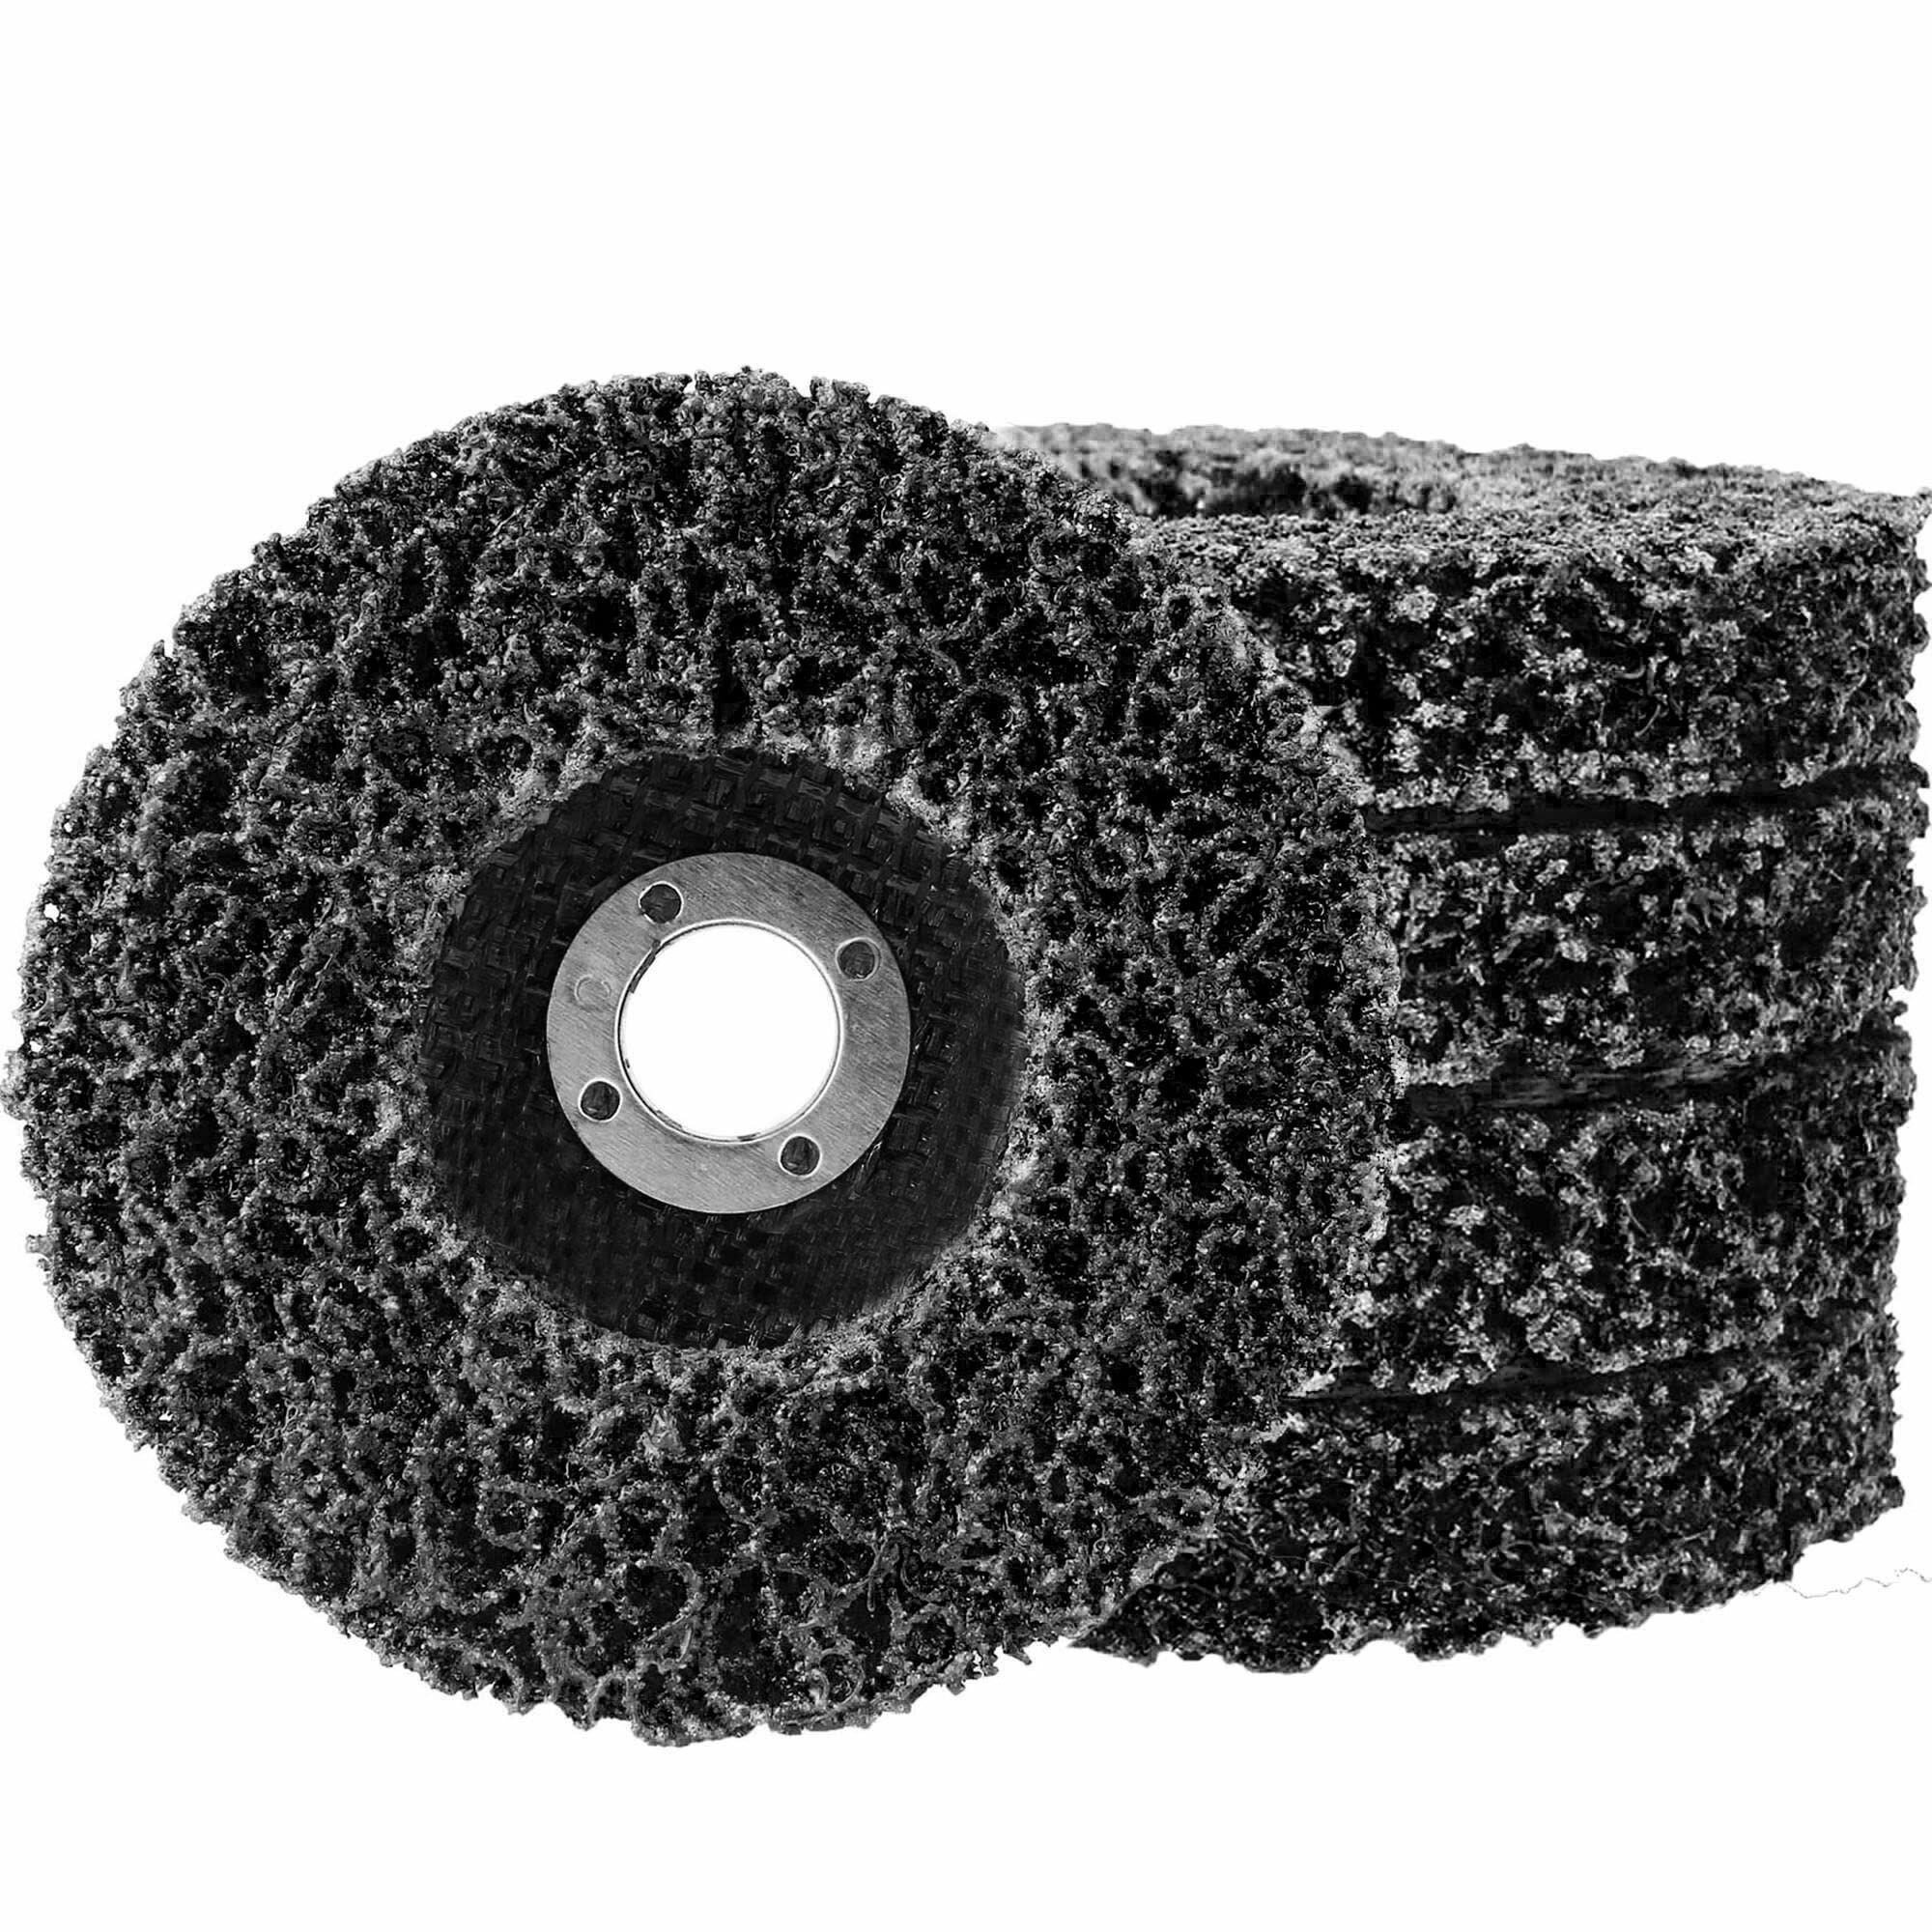 Круг шлифовальный зачистной 125 мм под УШМ (коралл) черный- набор 5 штук